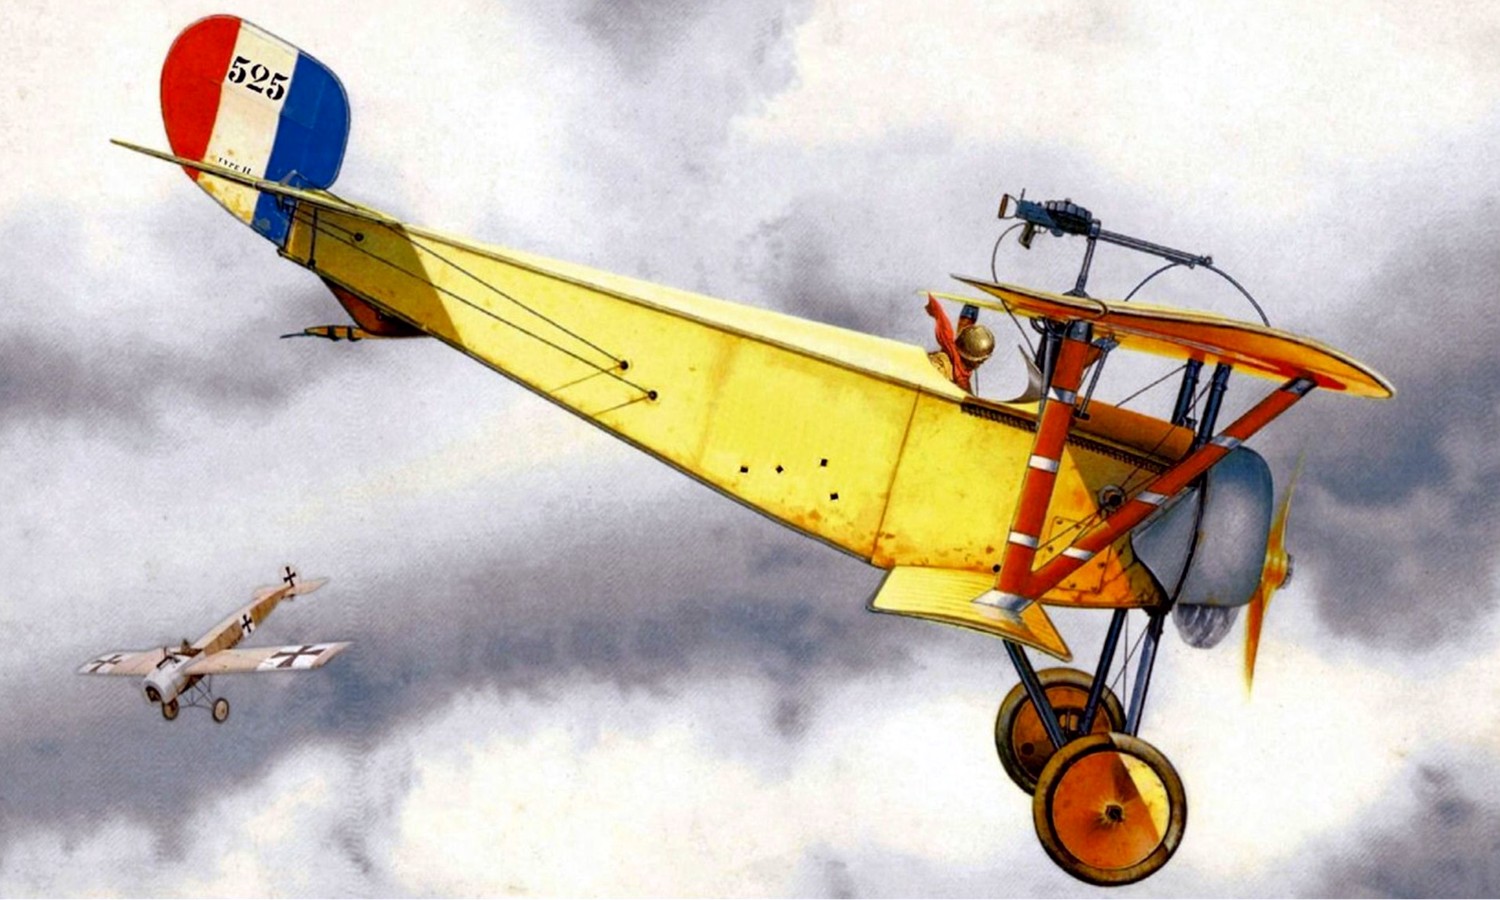 Nieuport12-Albert Duellin.jpg  by ScottUehl